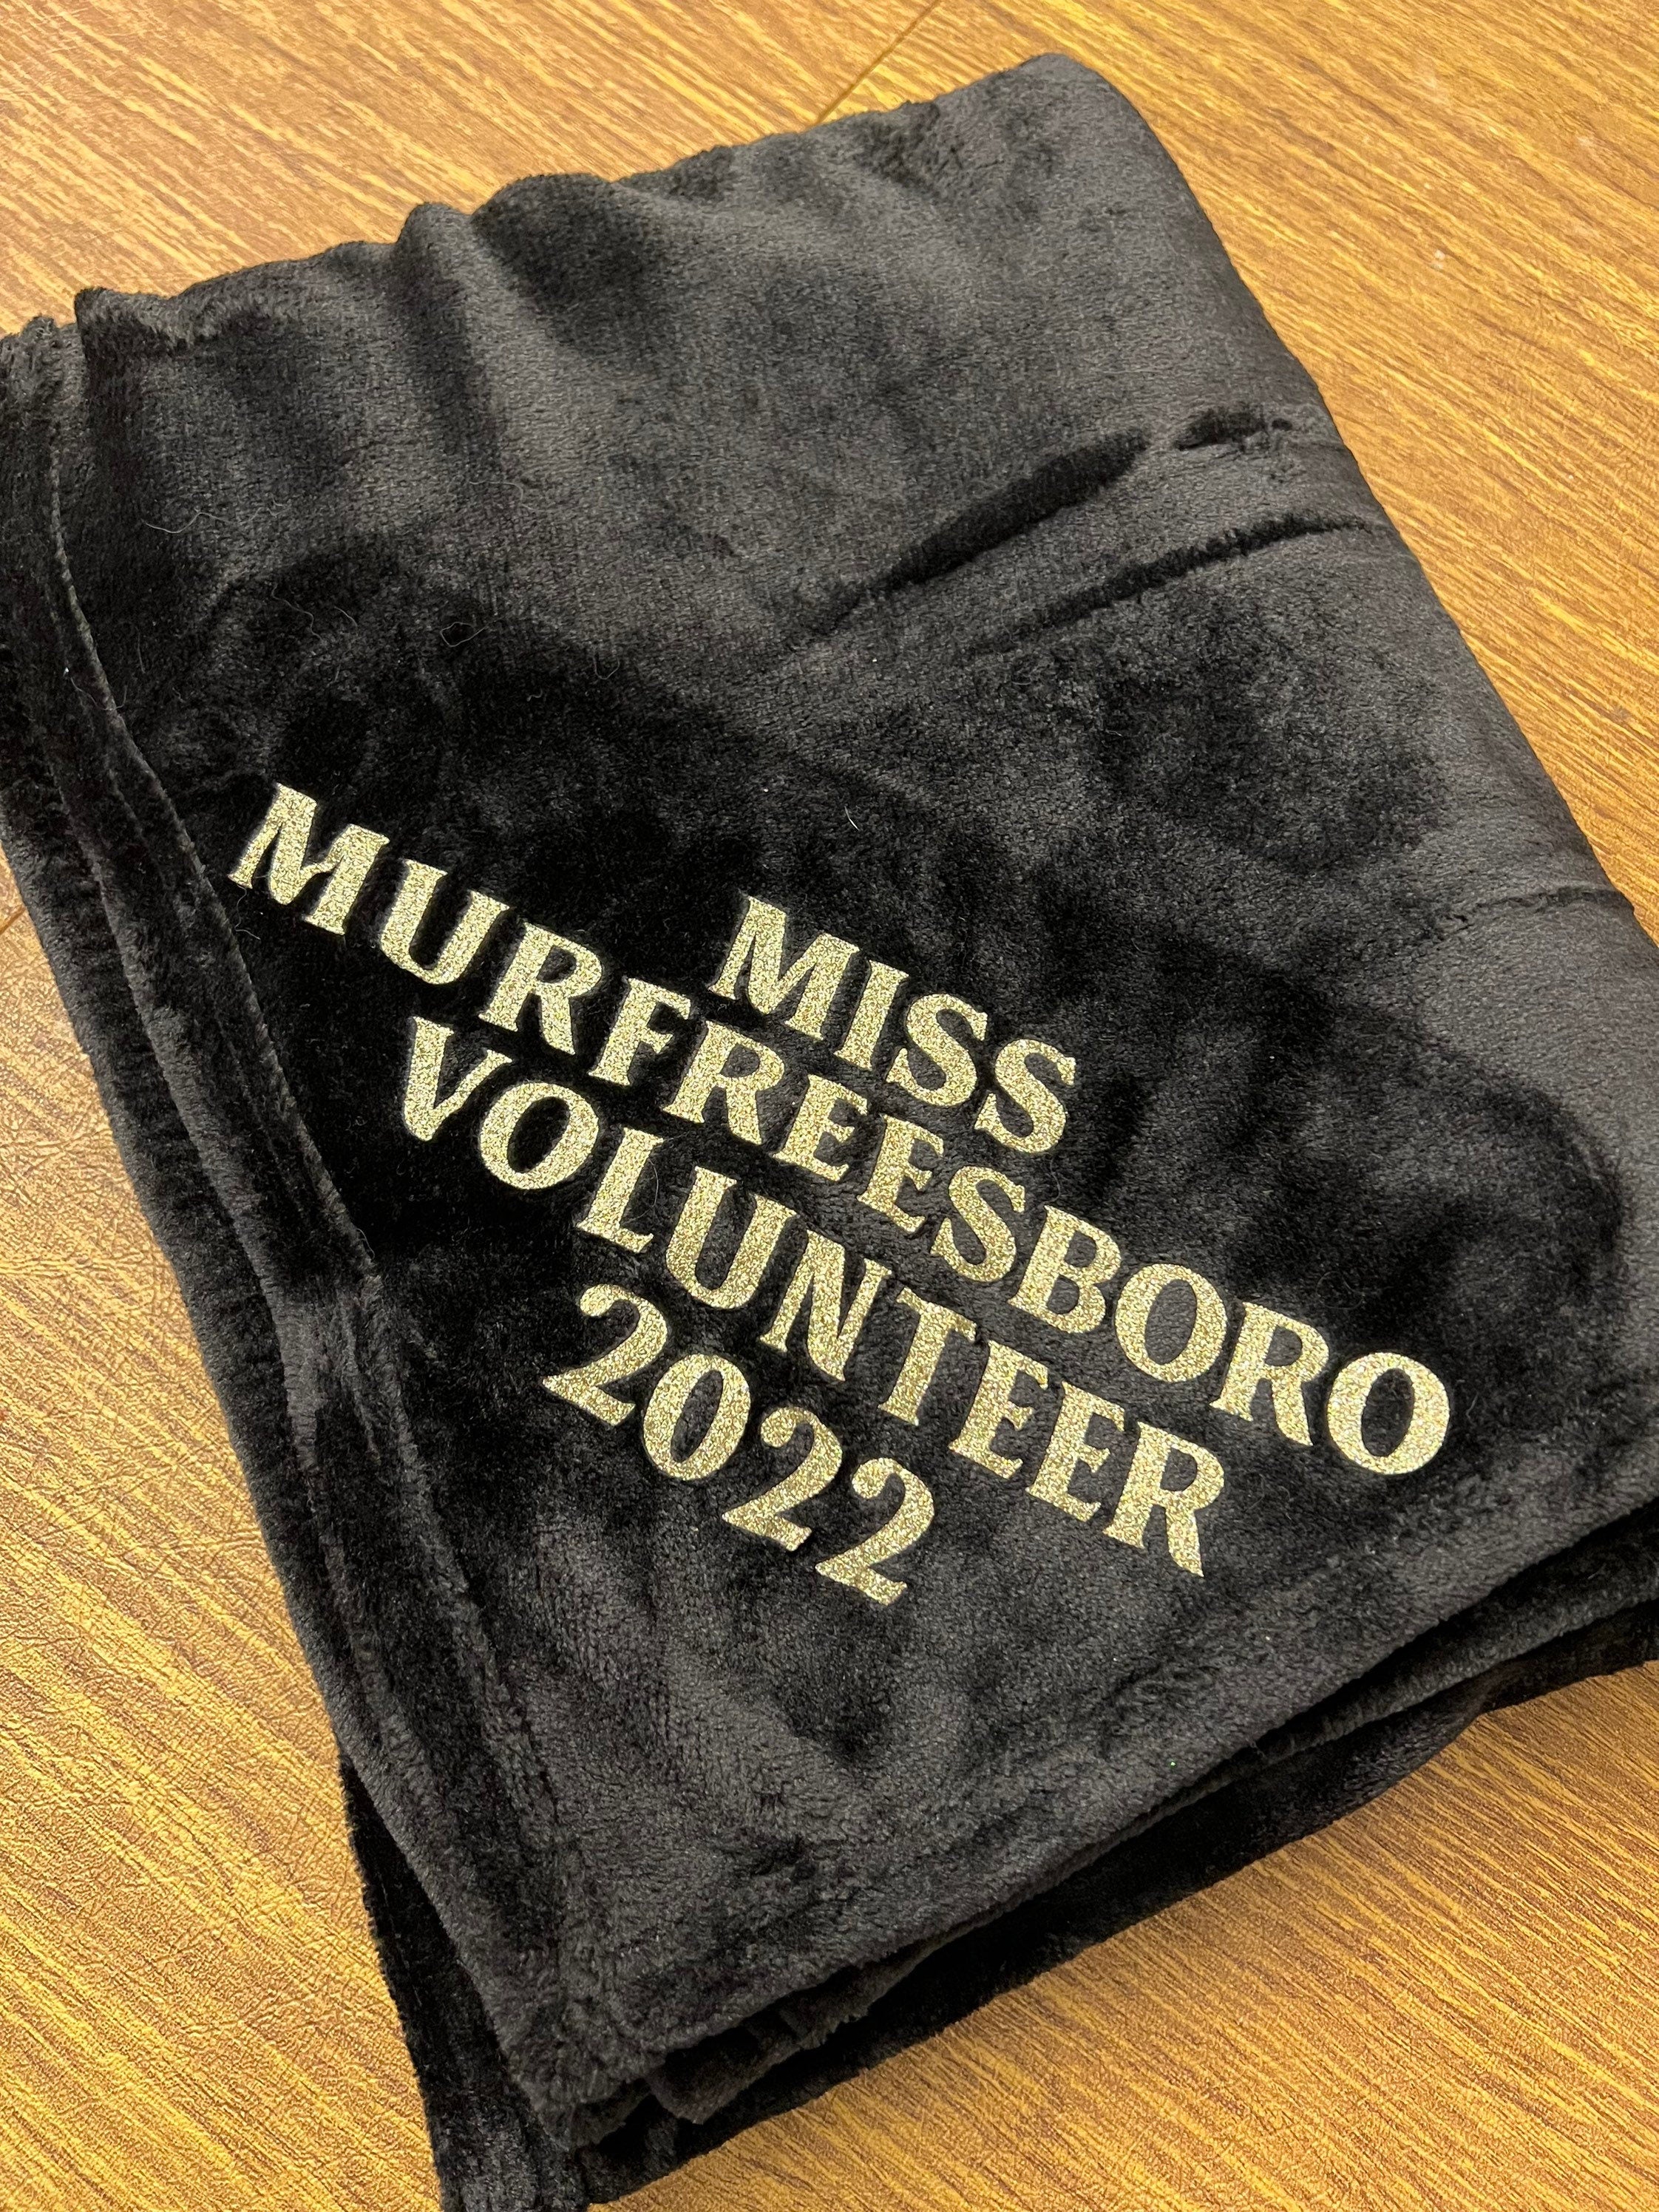 Miss Volunteer America Blanket